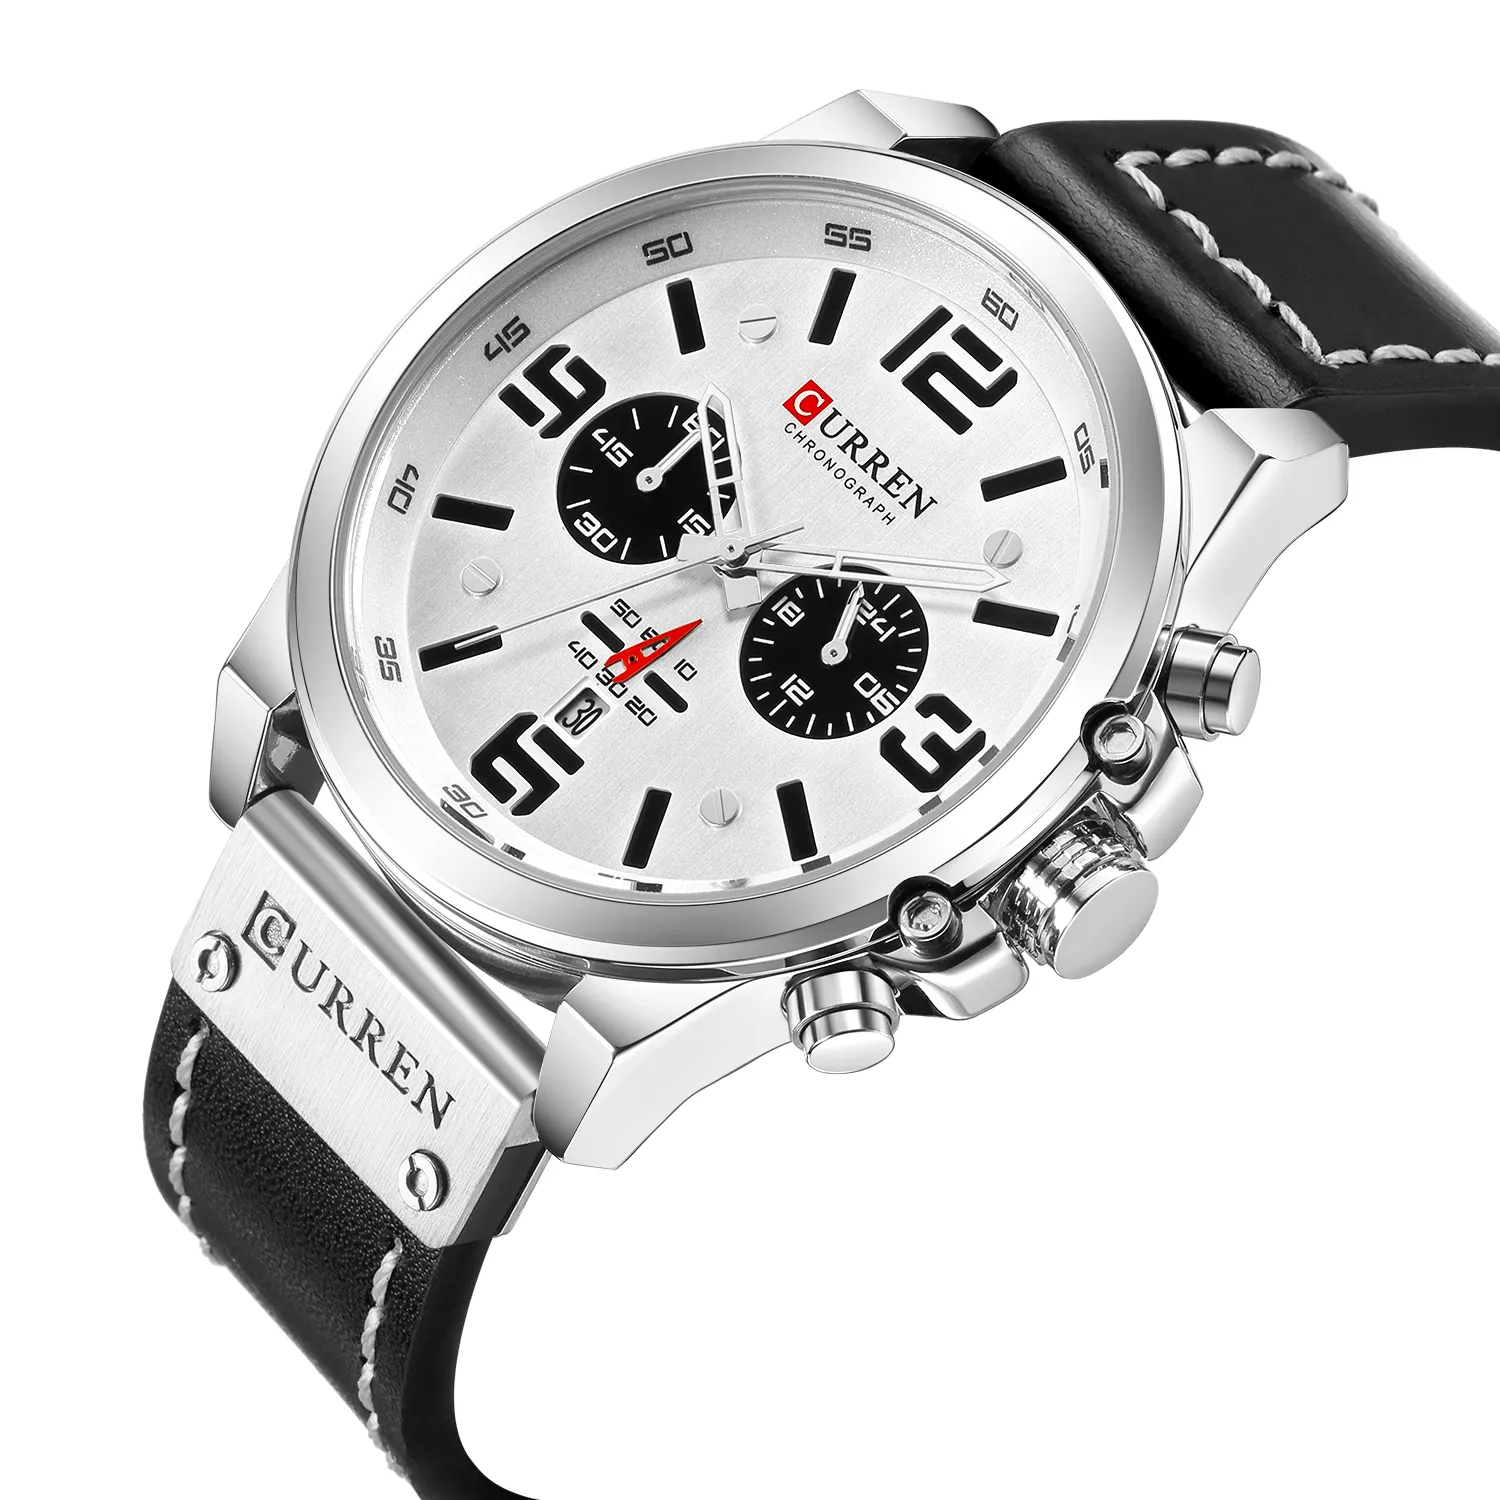 Curren 8314 ขายร้อนรุ่นสบายๆนาฬิกาควอทซ์โครโนกราฟนาฬิกาข้อมือผู้ชายแฟชั่นกีฬานาฬิกาสายหนังนาฬิกา